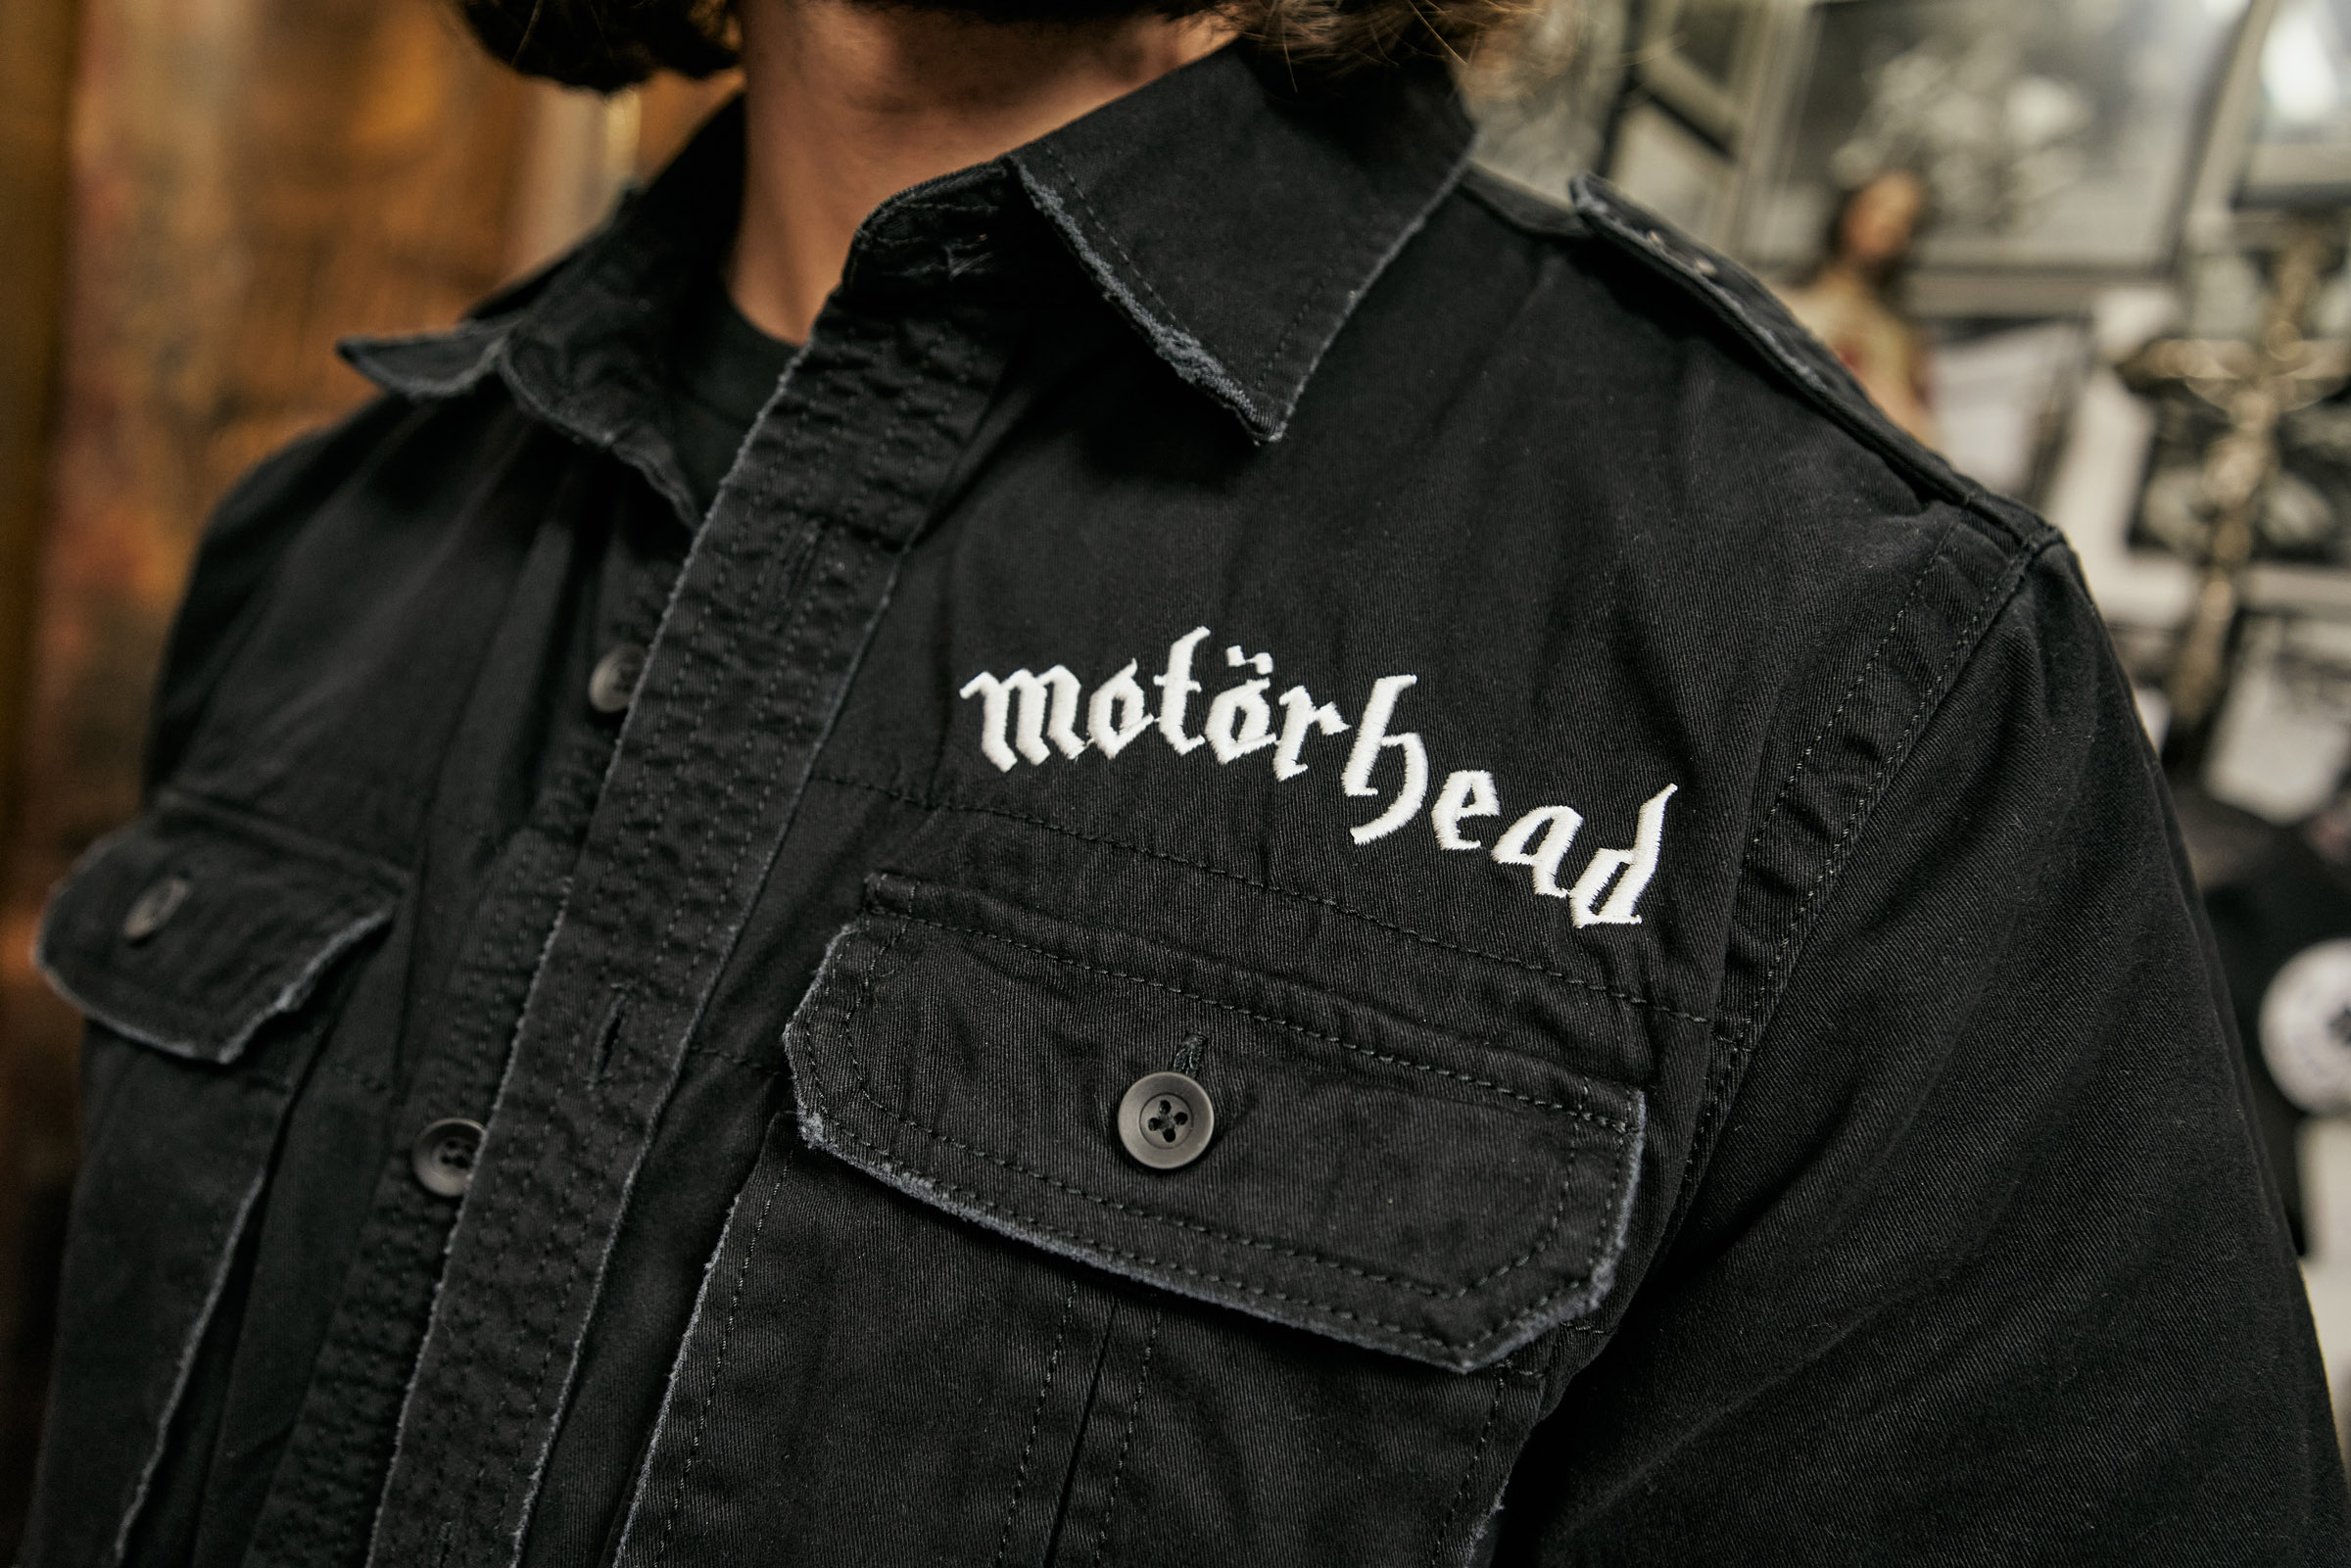 1/2 Shirt Motorhead Vintage sleeve